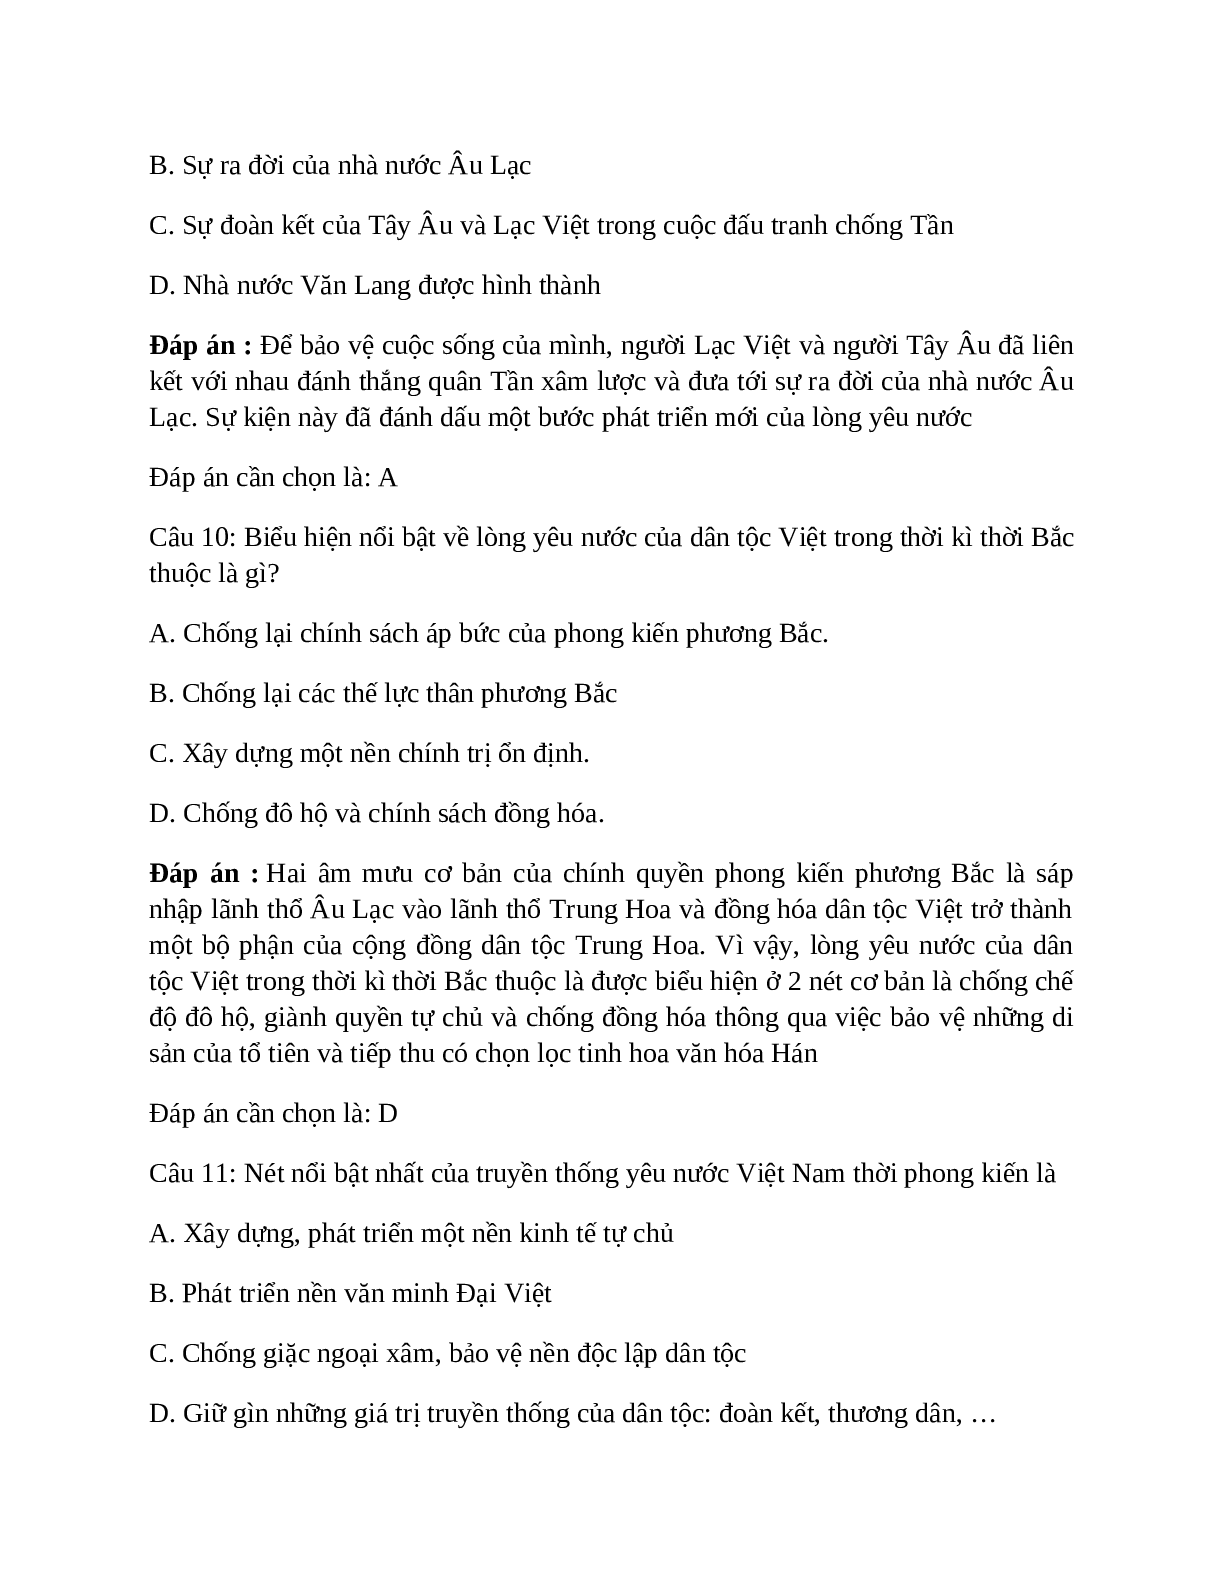 Lịch Sử 10 Bài 28 (Lý thuyết và trắc nghiệm): Truyền thống yêu nước của dân tộc Việt Nam thời phong kiến (trang 8)